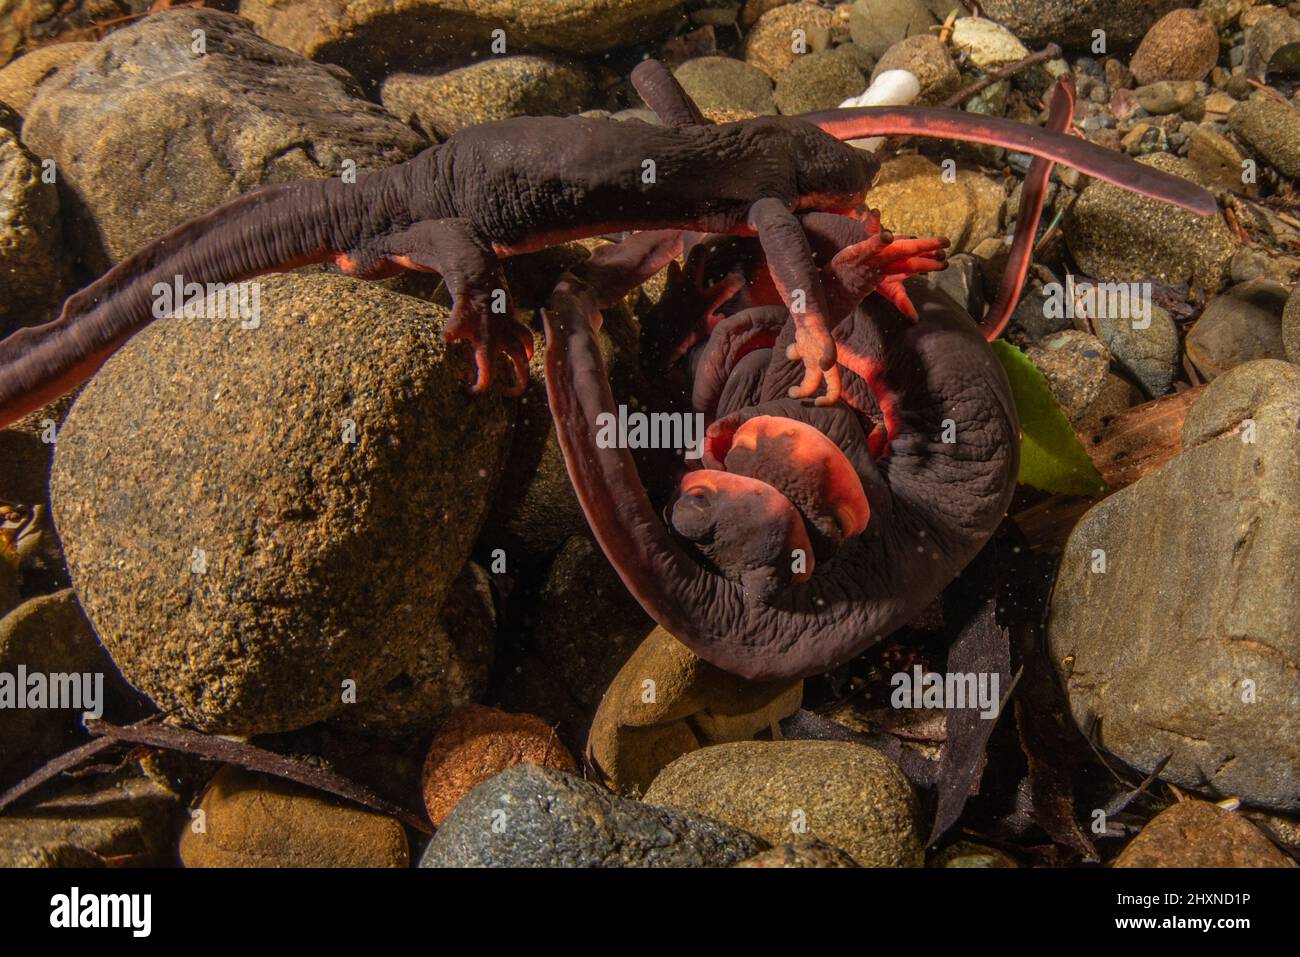 El acoplamiento de los newts rojos del bellied (Taricha rivularis) forma una bola submarina de salamanders donde los hombres luchan sobre hembras. Un anfibio encontrado en California. Foto de stock